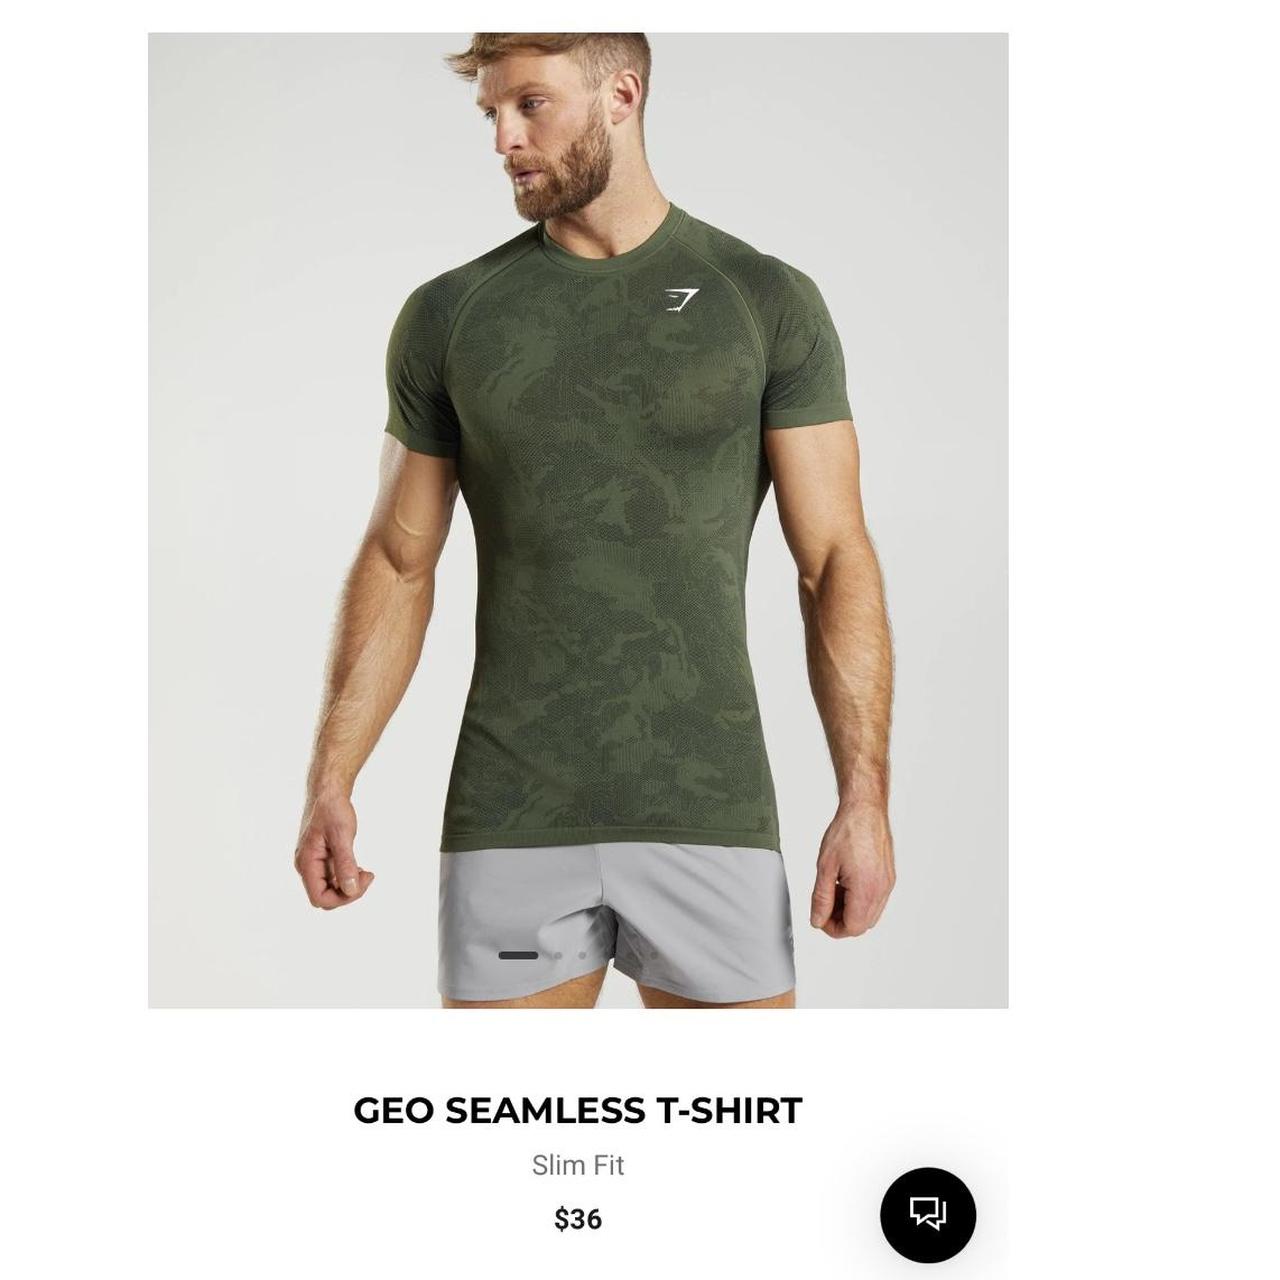 Gymshark Geo Seamless T-shirt Size Medium Worn - Depop